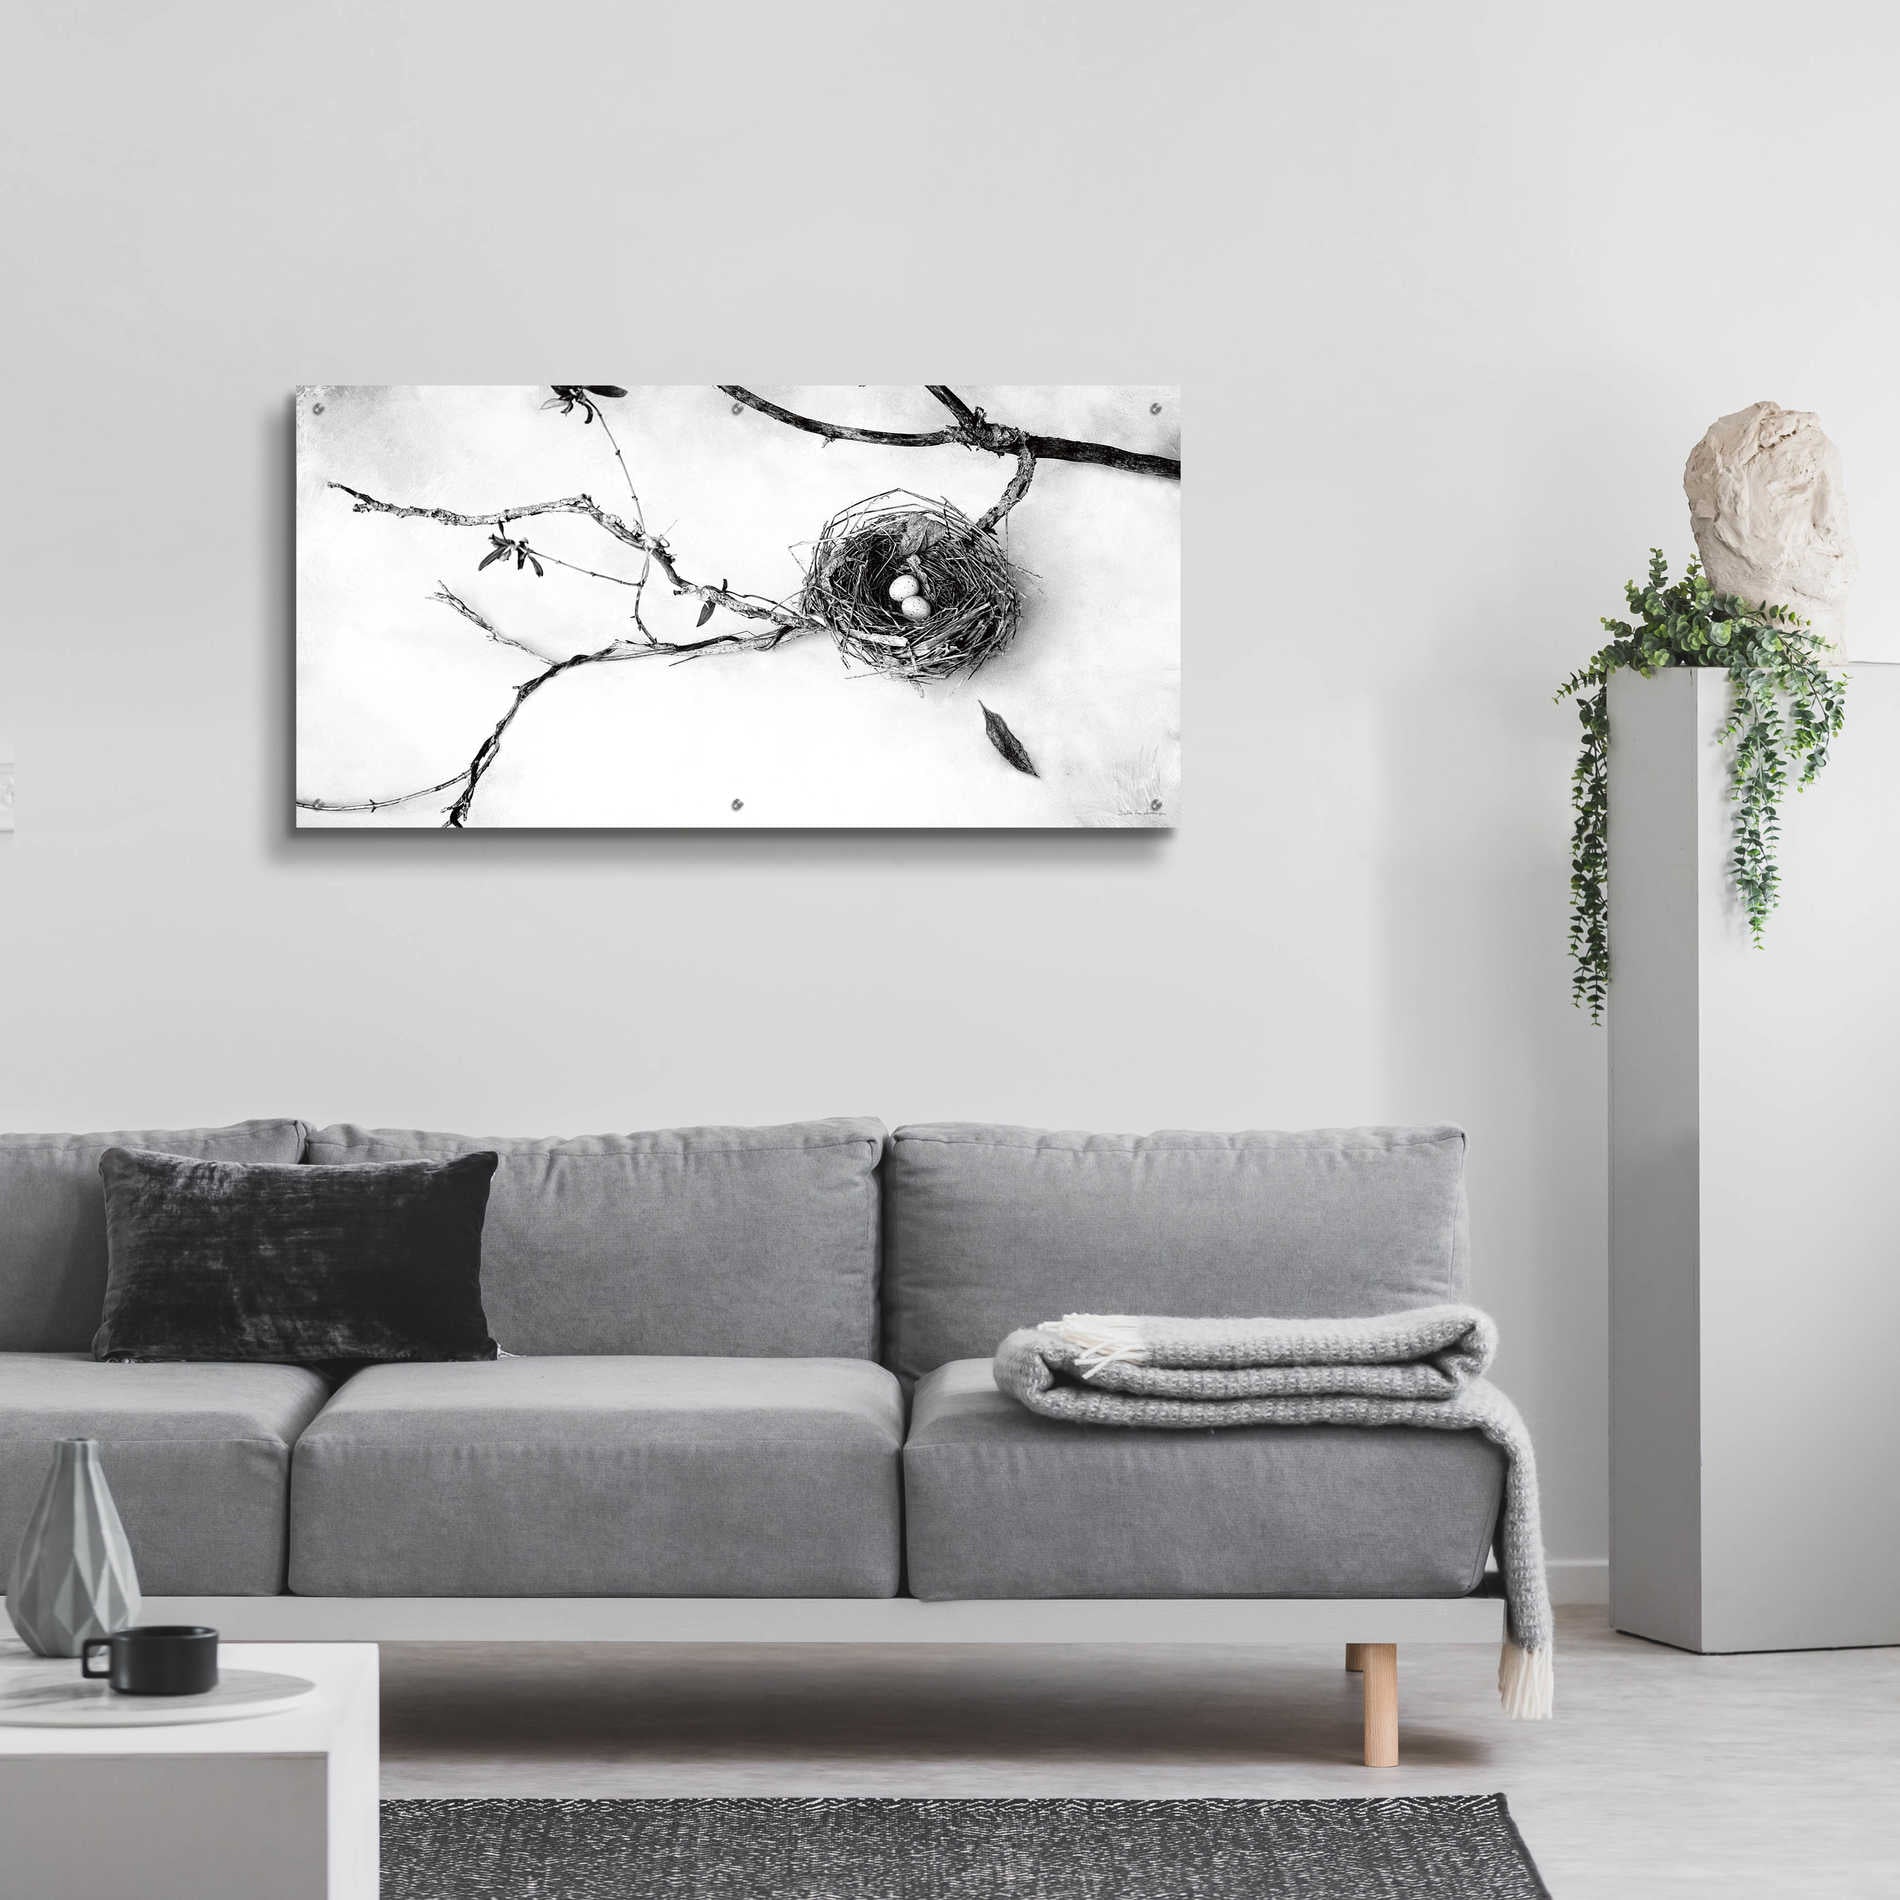 Epic Art 'Nest and Branch II' by Debra Van Swearingen, Acrylic Glass Wall Art,48x24